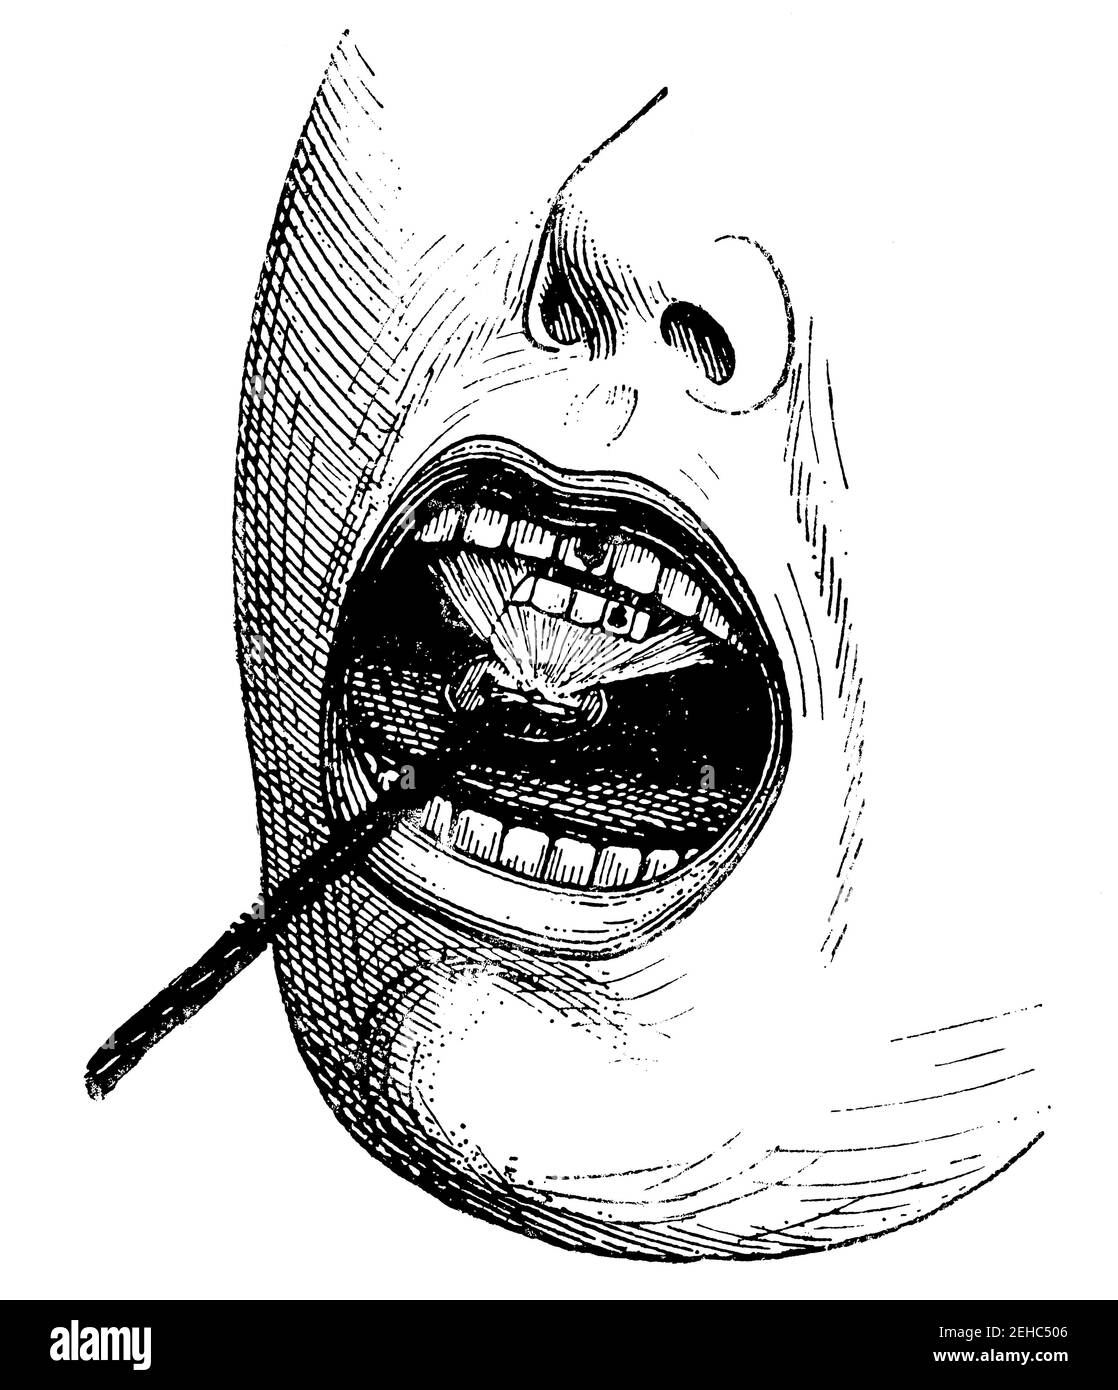 Iluminación de la cavidad oral por luz eléctrica. Ilustración del siglo 19. Alemania. Fondo blanco. Foto de stock